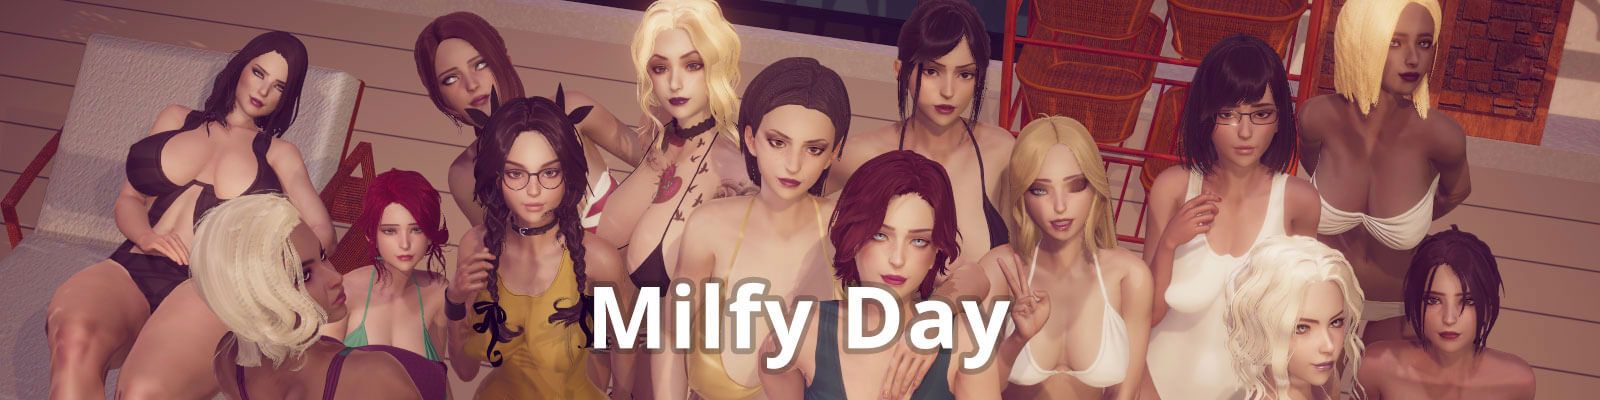 Milfy Day [v0.6.4]